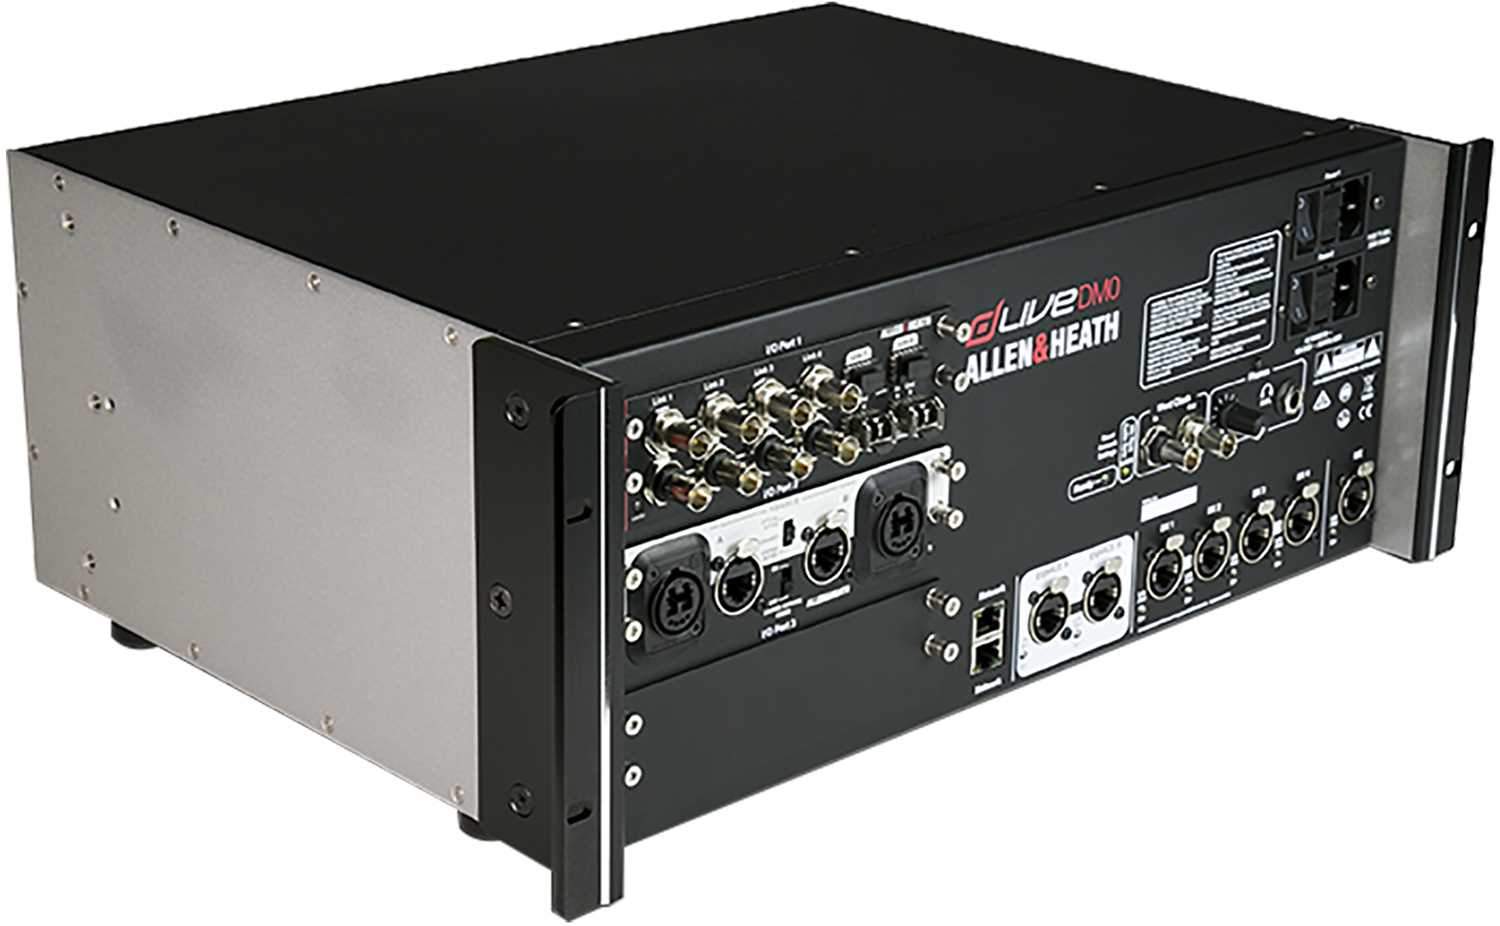 Allen & Heath DM0 dLive S Class MixRack Mixer - ProSound and Stage Lighting